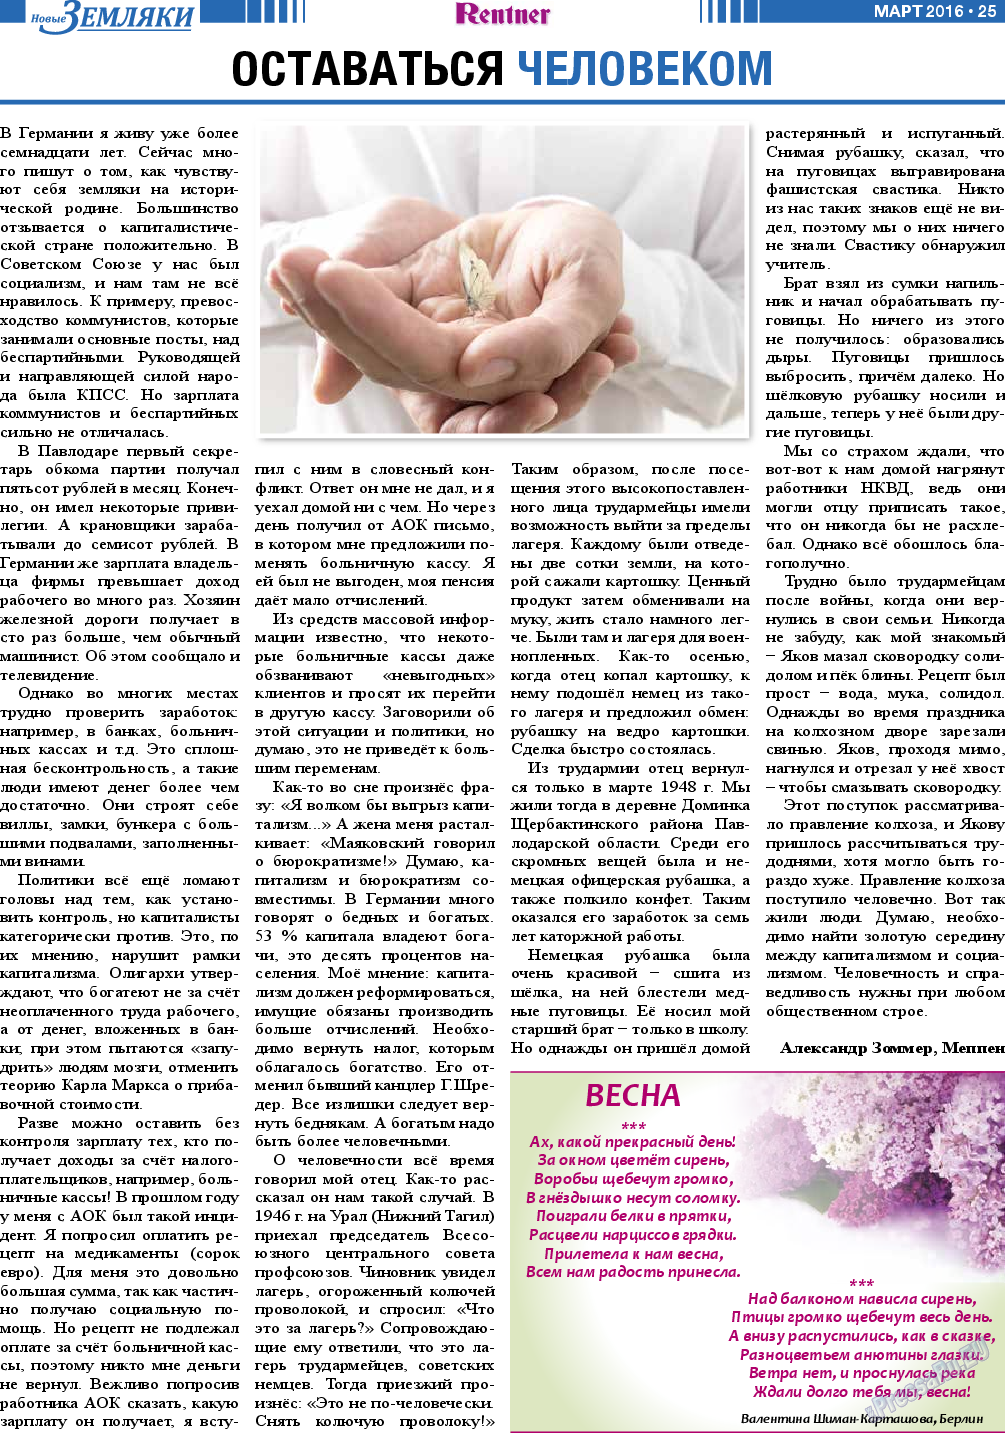 Новые Земляки, газета. 2016 №3 стр.25